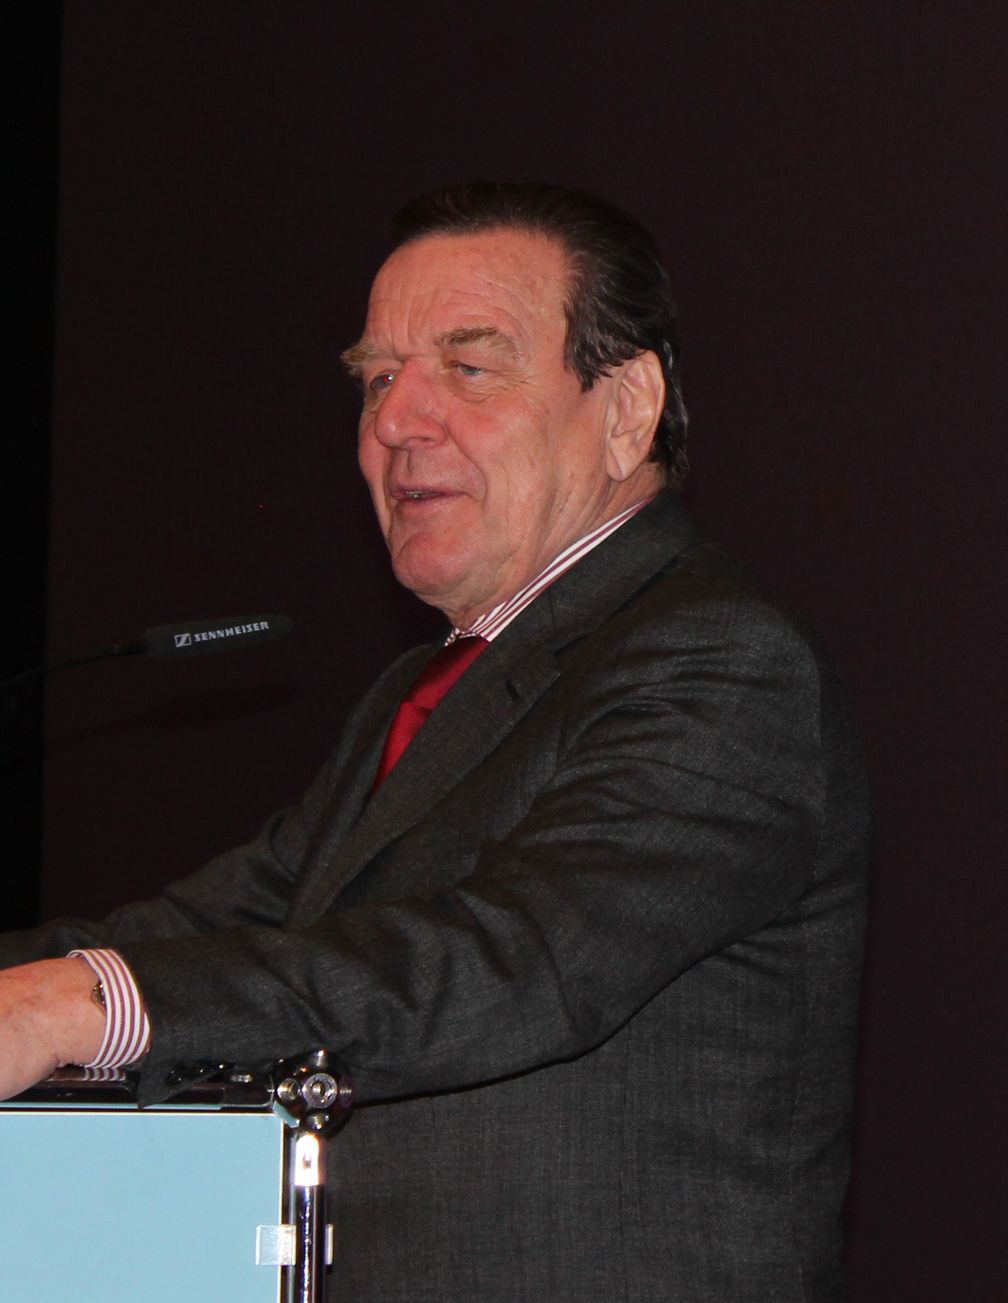 Gerhard Schröder 2013 in Wittmund